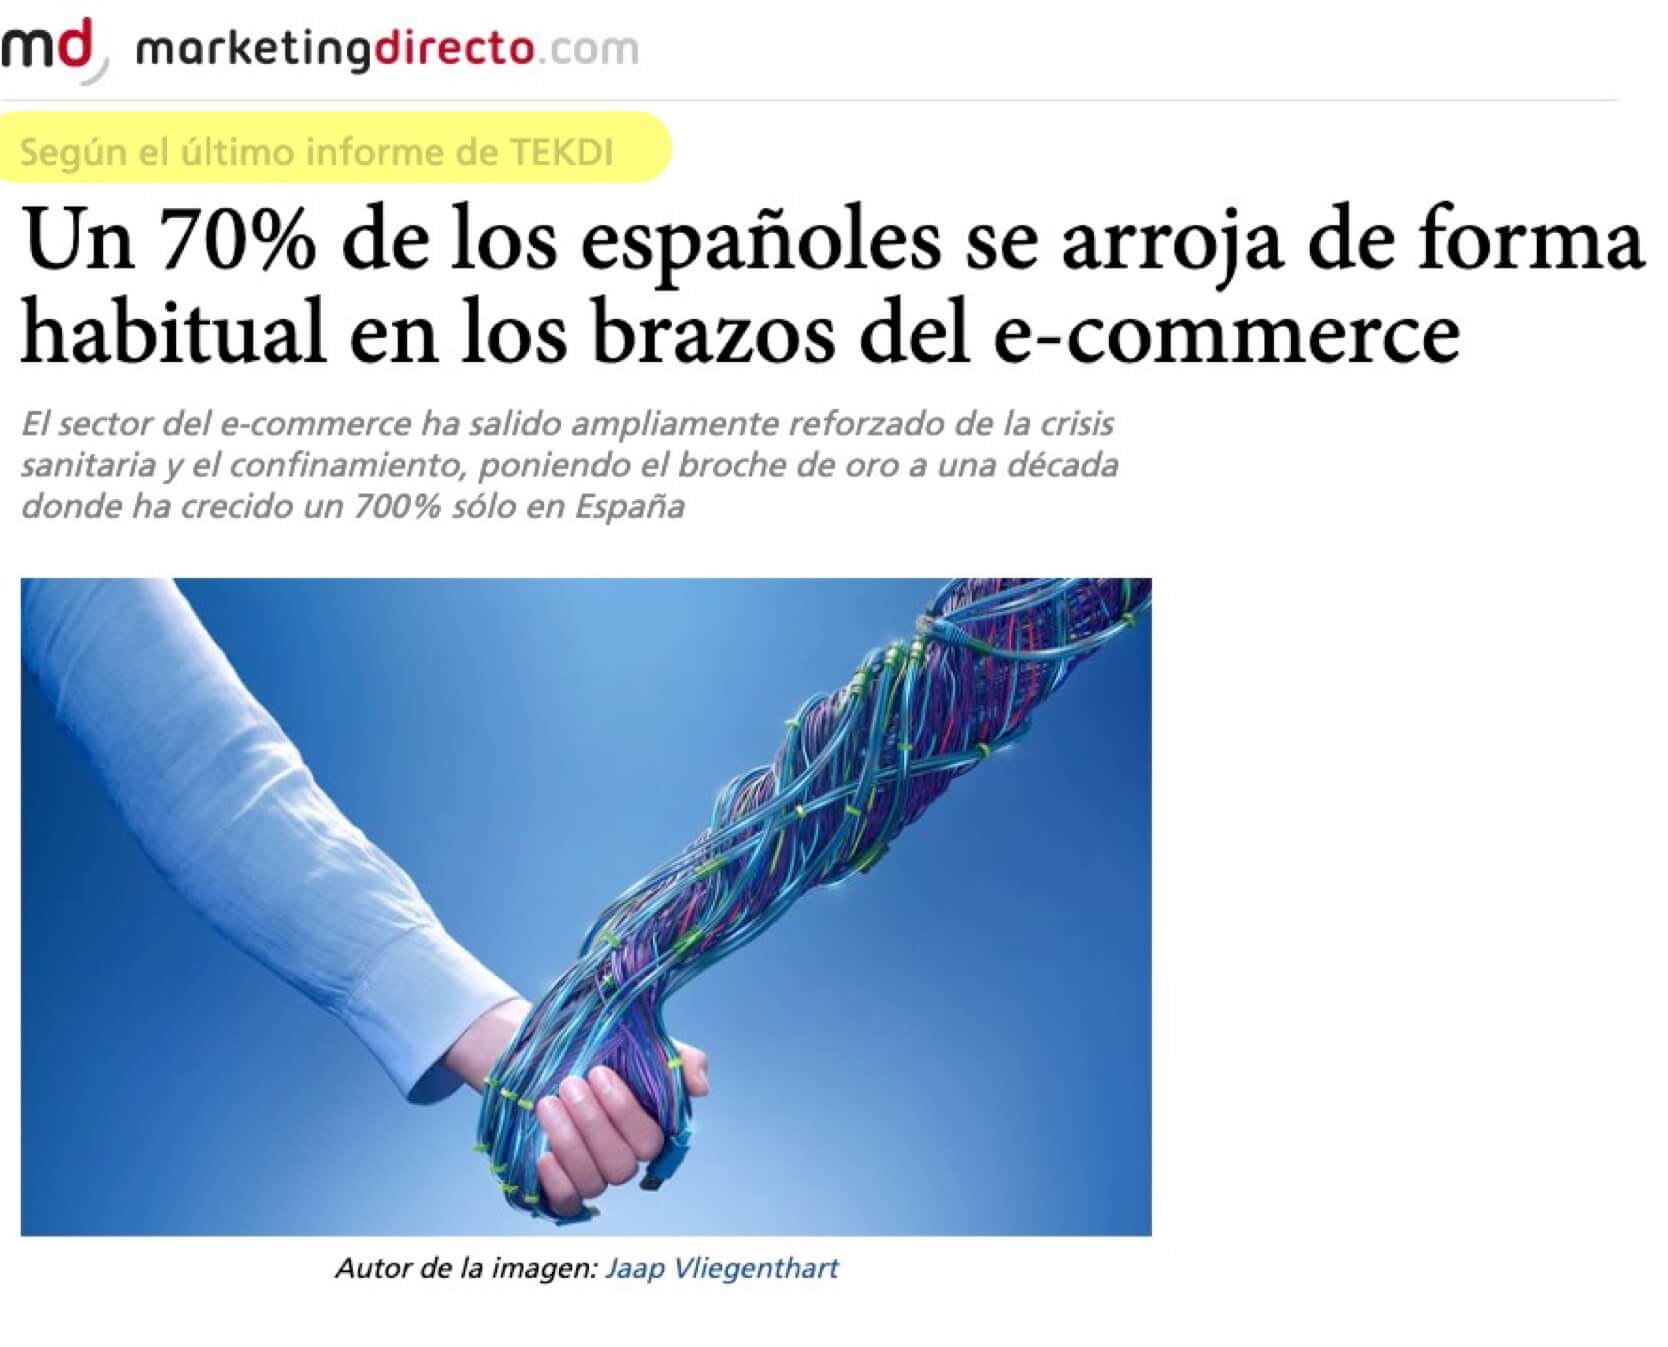 Un 70% de los españoles se arroja de forma habitual en los brazos del e-commerce